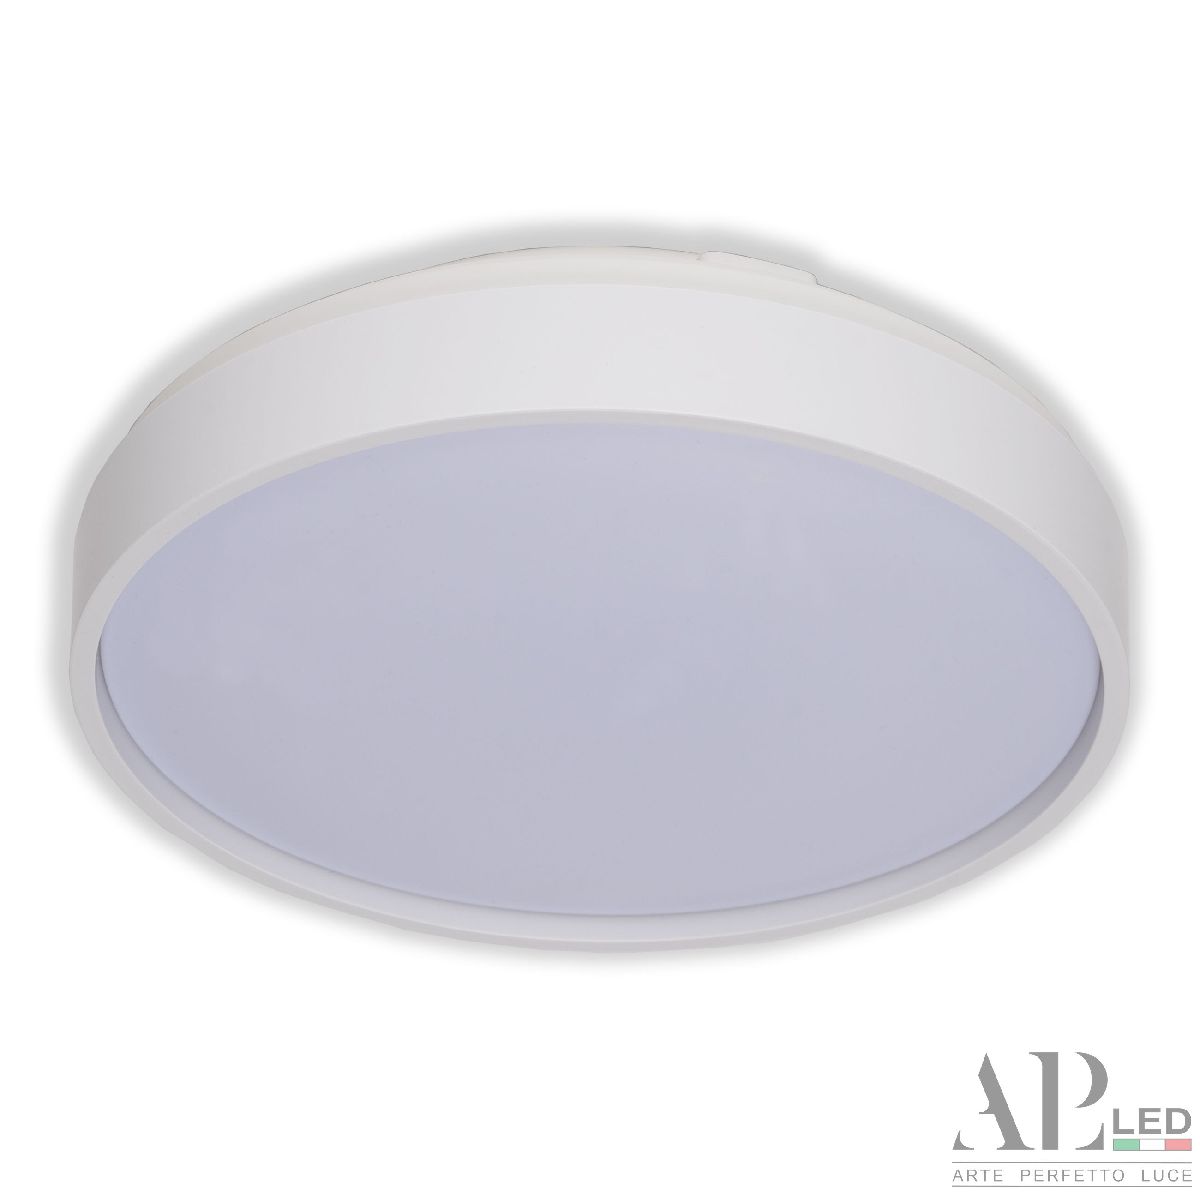 Потолочный светильник Arte Perfetto Luce Toscana 3315.XM302-1-267/12W/4K White TD